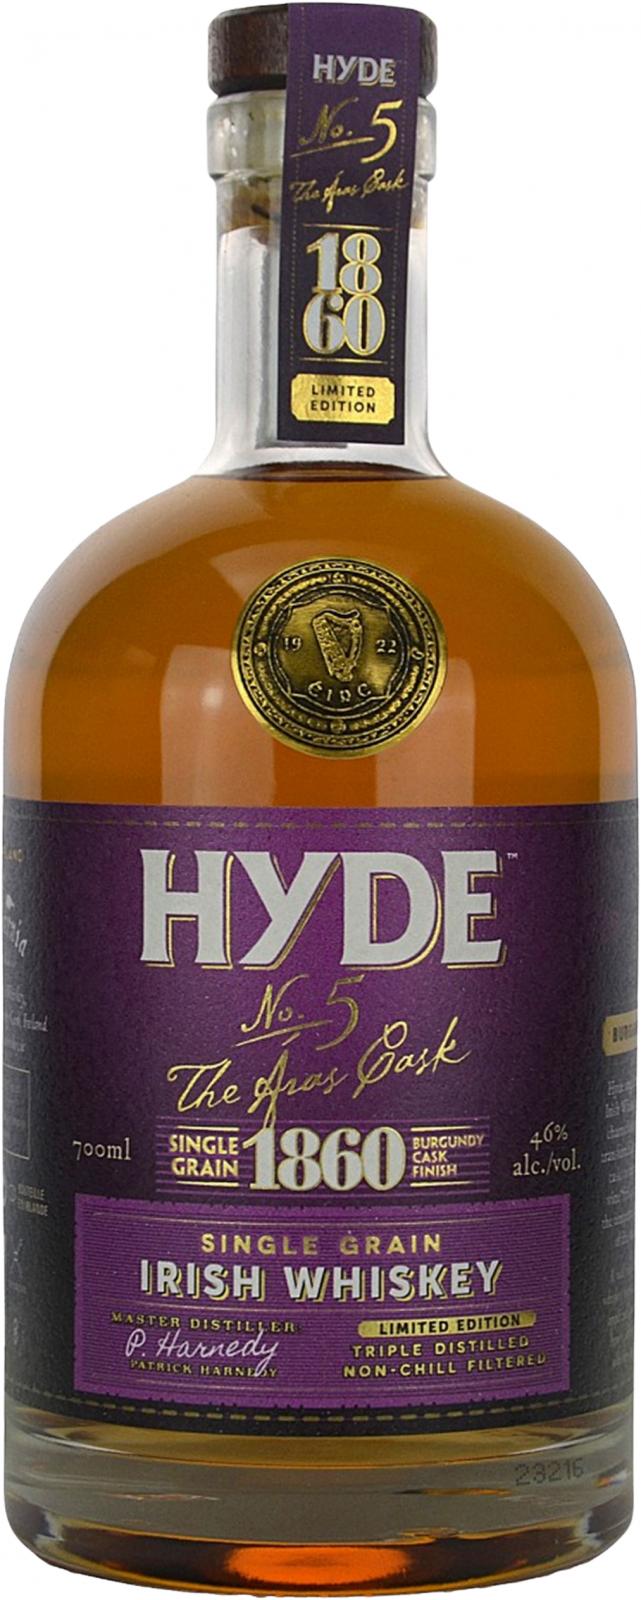 Hyde 6yo No. 5 The Aras Cask Burgundy Cask Finish 46% 700ml